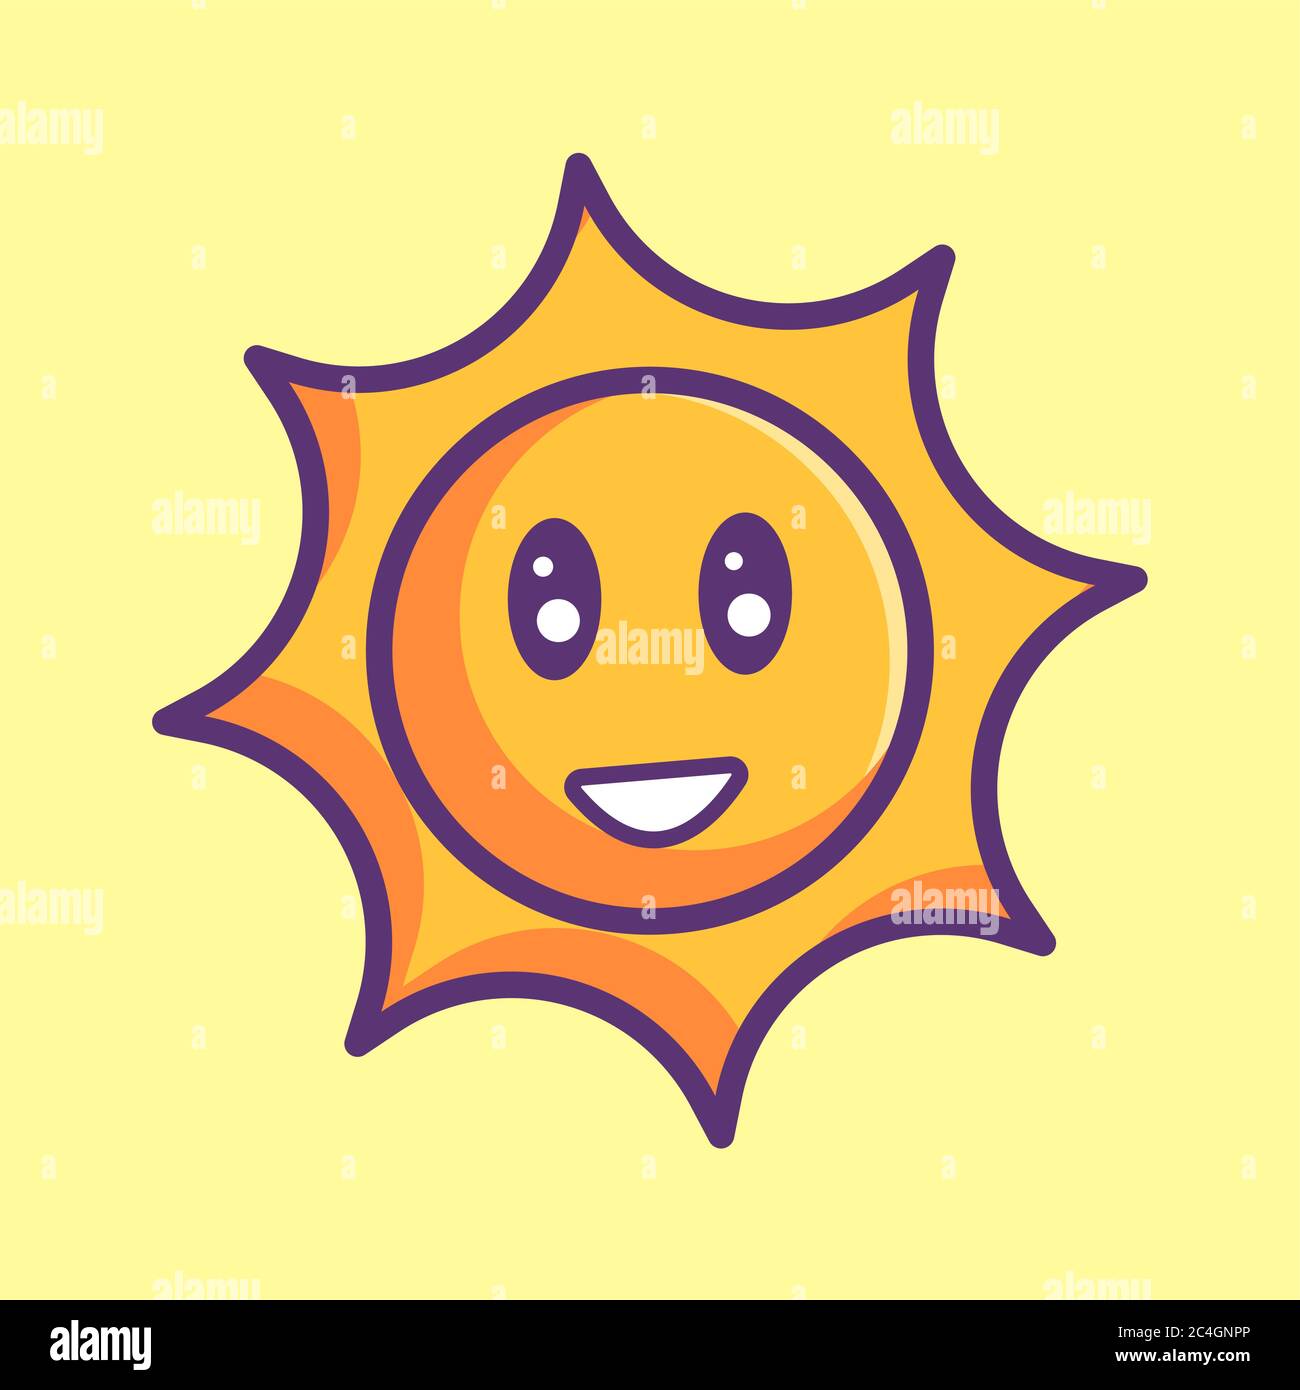 sun vector icon. summer icon concept Stock Vector